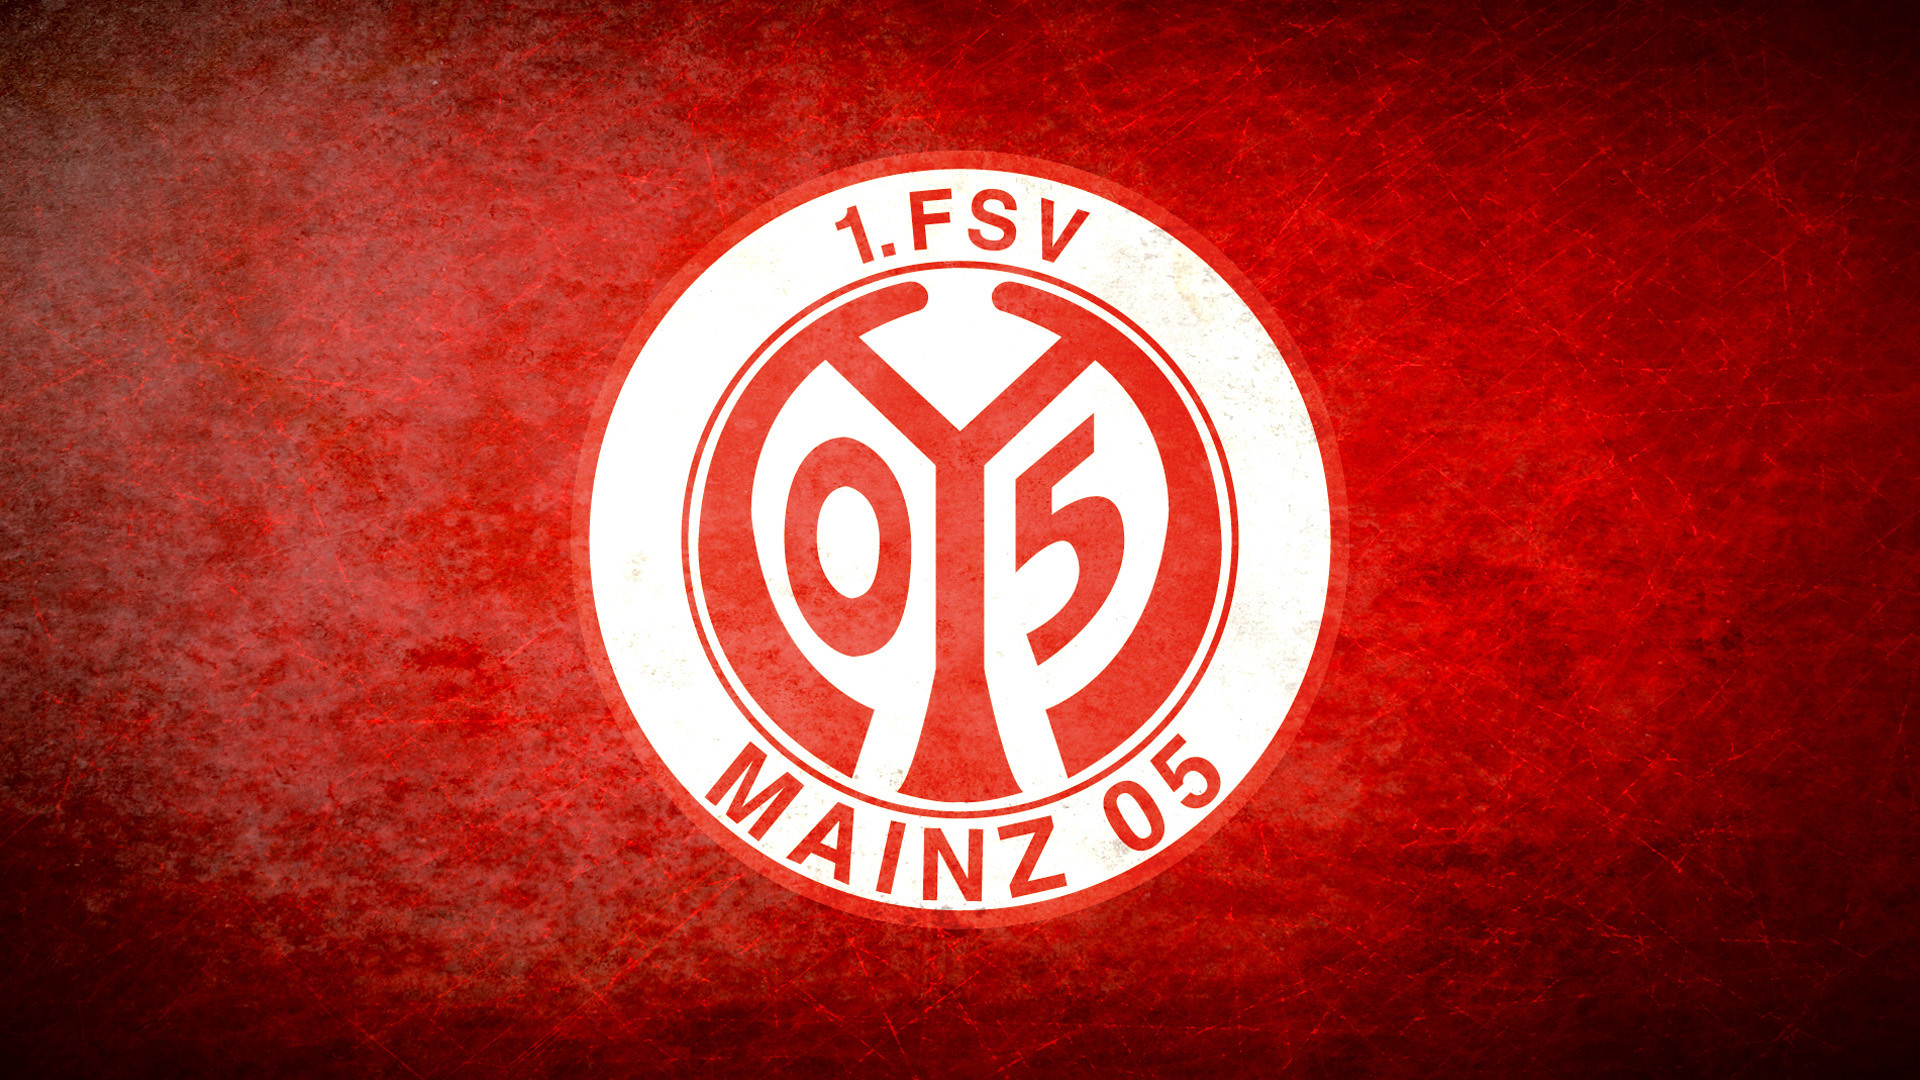 1920x1080 1 FSV Mainz 05 Wallpapers -01, Football Wallpapers, Football .